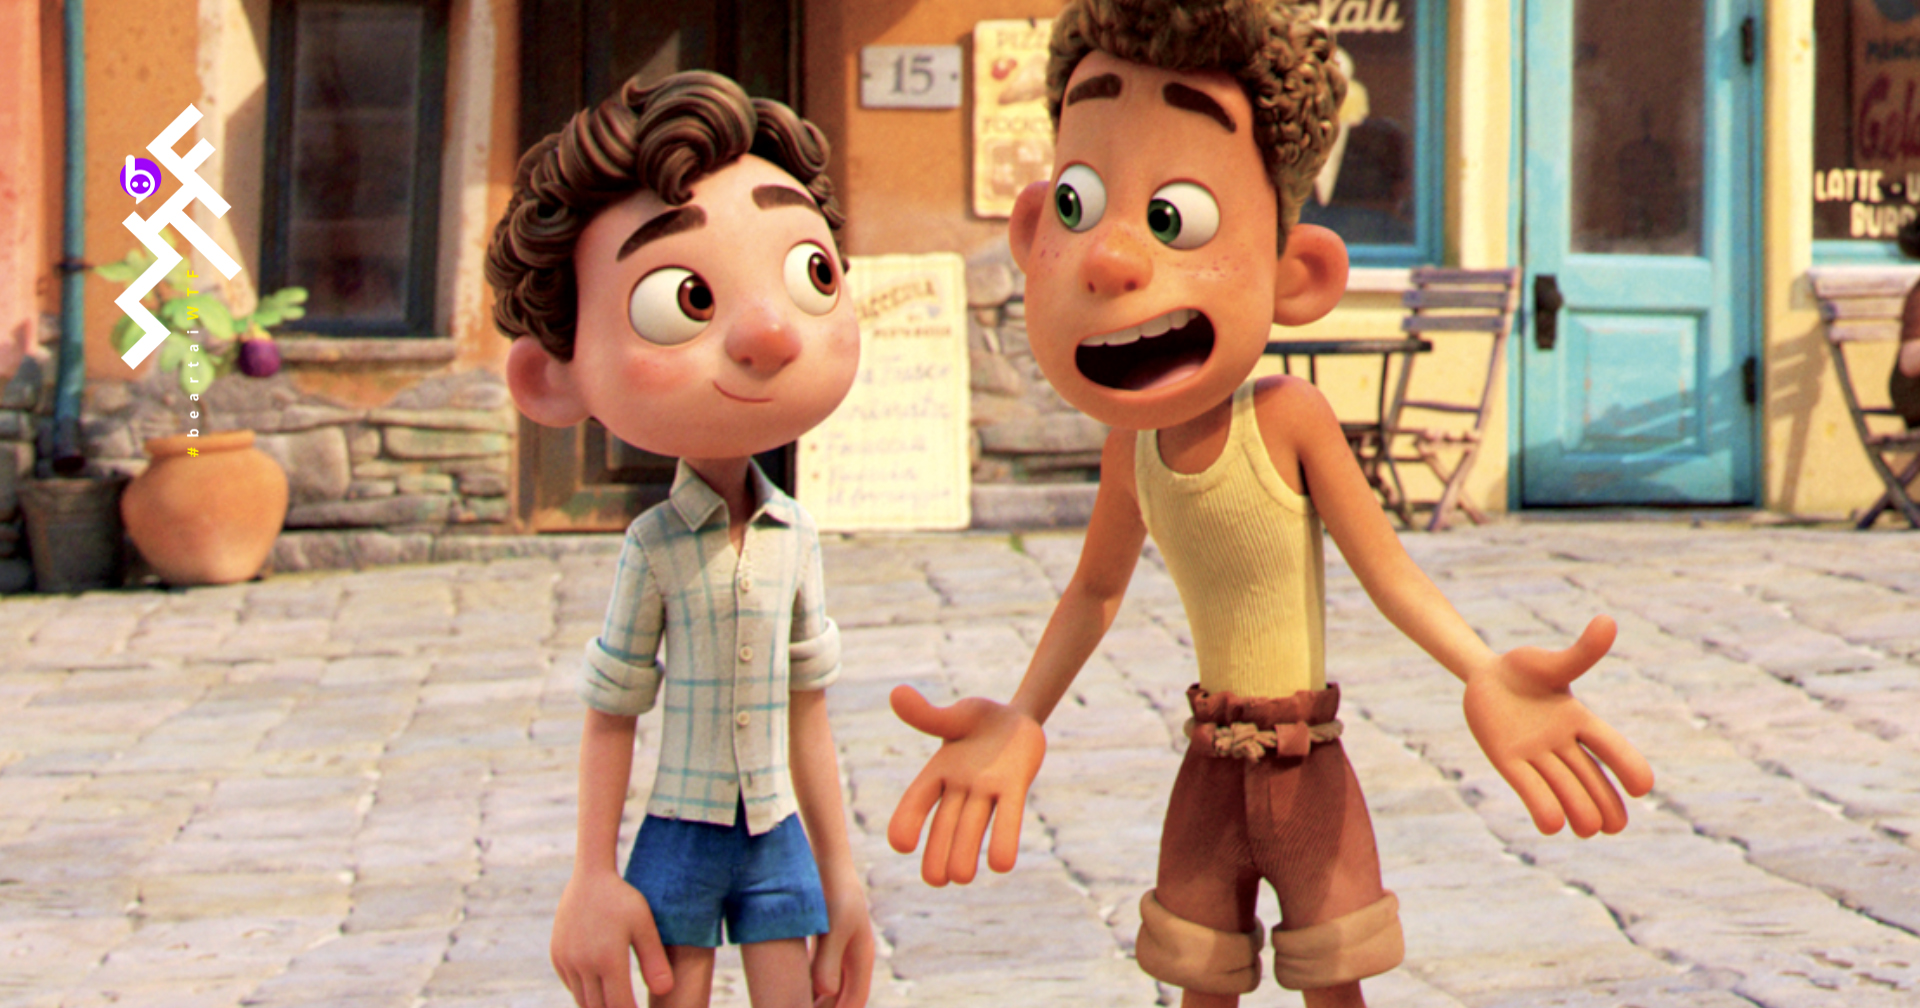 ภาพใหม่ของ Luca : ผลงานล่าสุดของ Pixar ที่จะทำให้คุณหลงรักเมืองชายทะเลอิตาลี